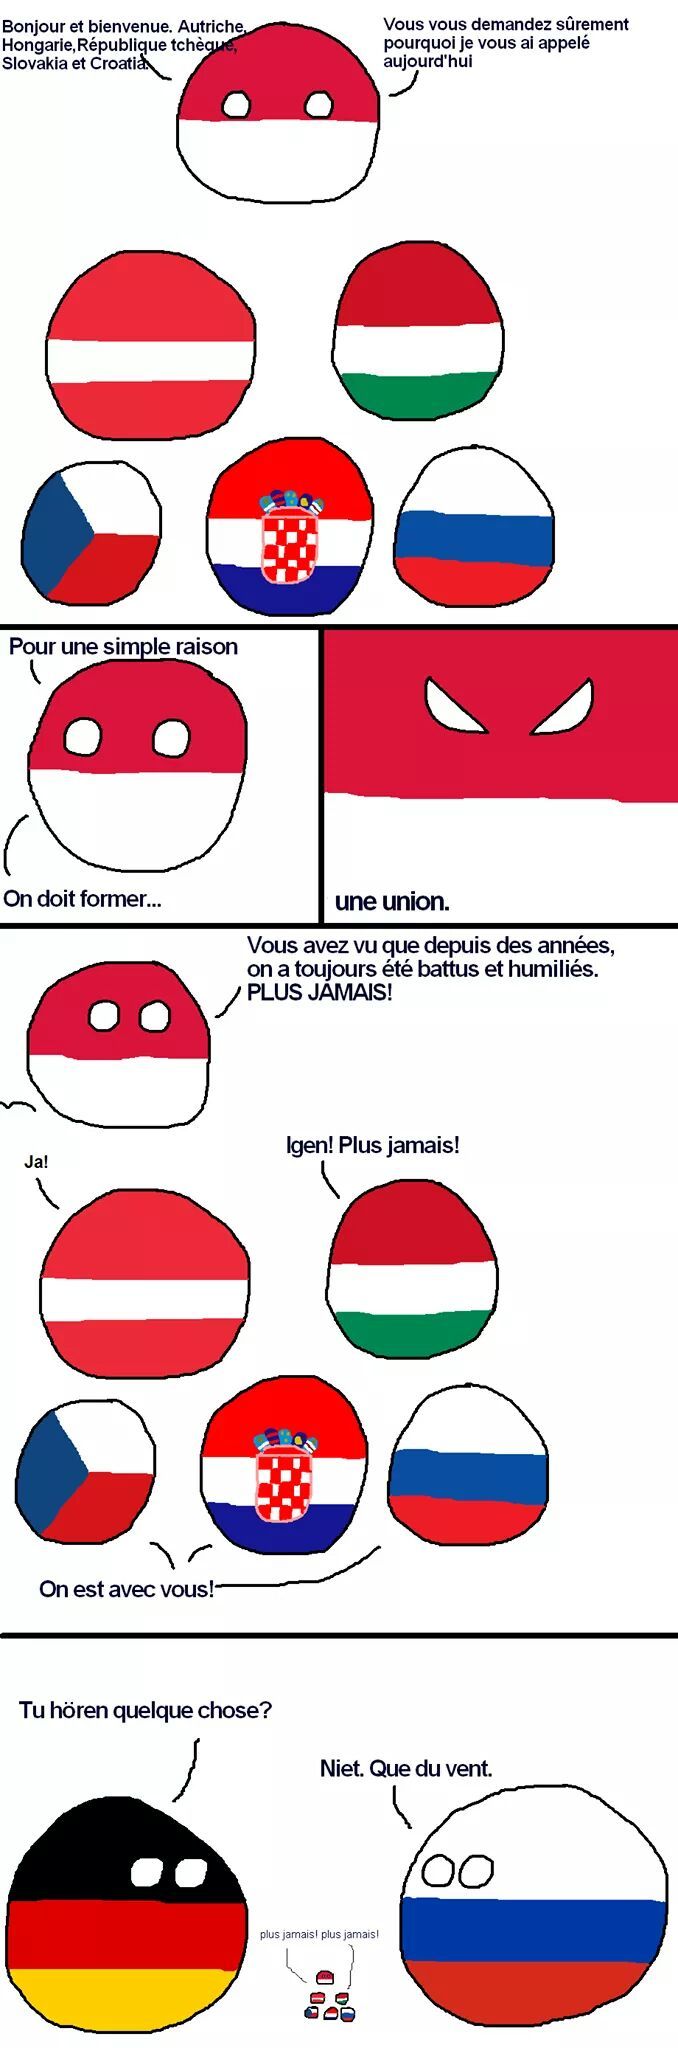 Polandball - meme